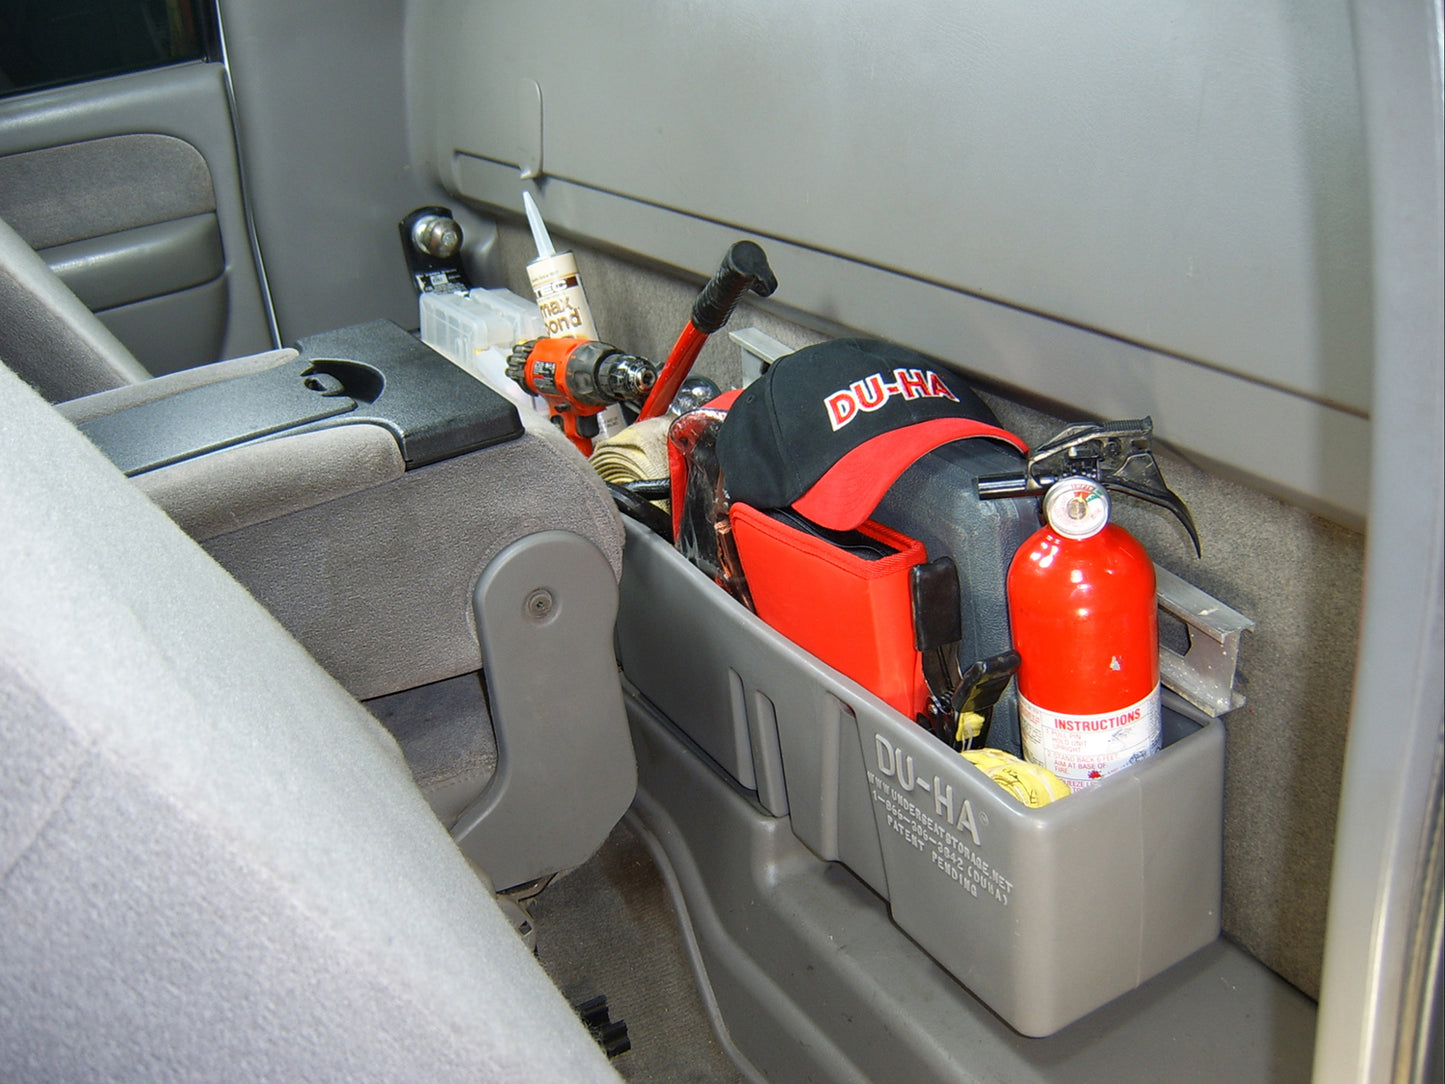 DU-HA 10026 Chevrolet/GMC Behind-the-Seat Storage Console Organizer And Gun Case - Dark Gray